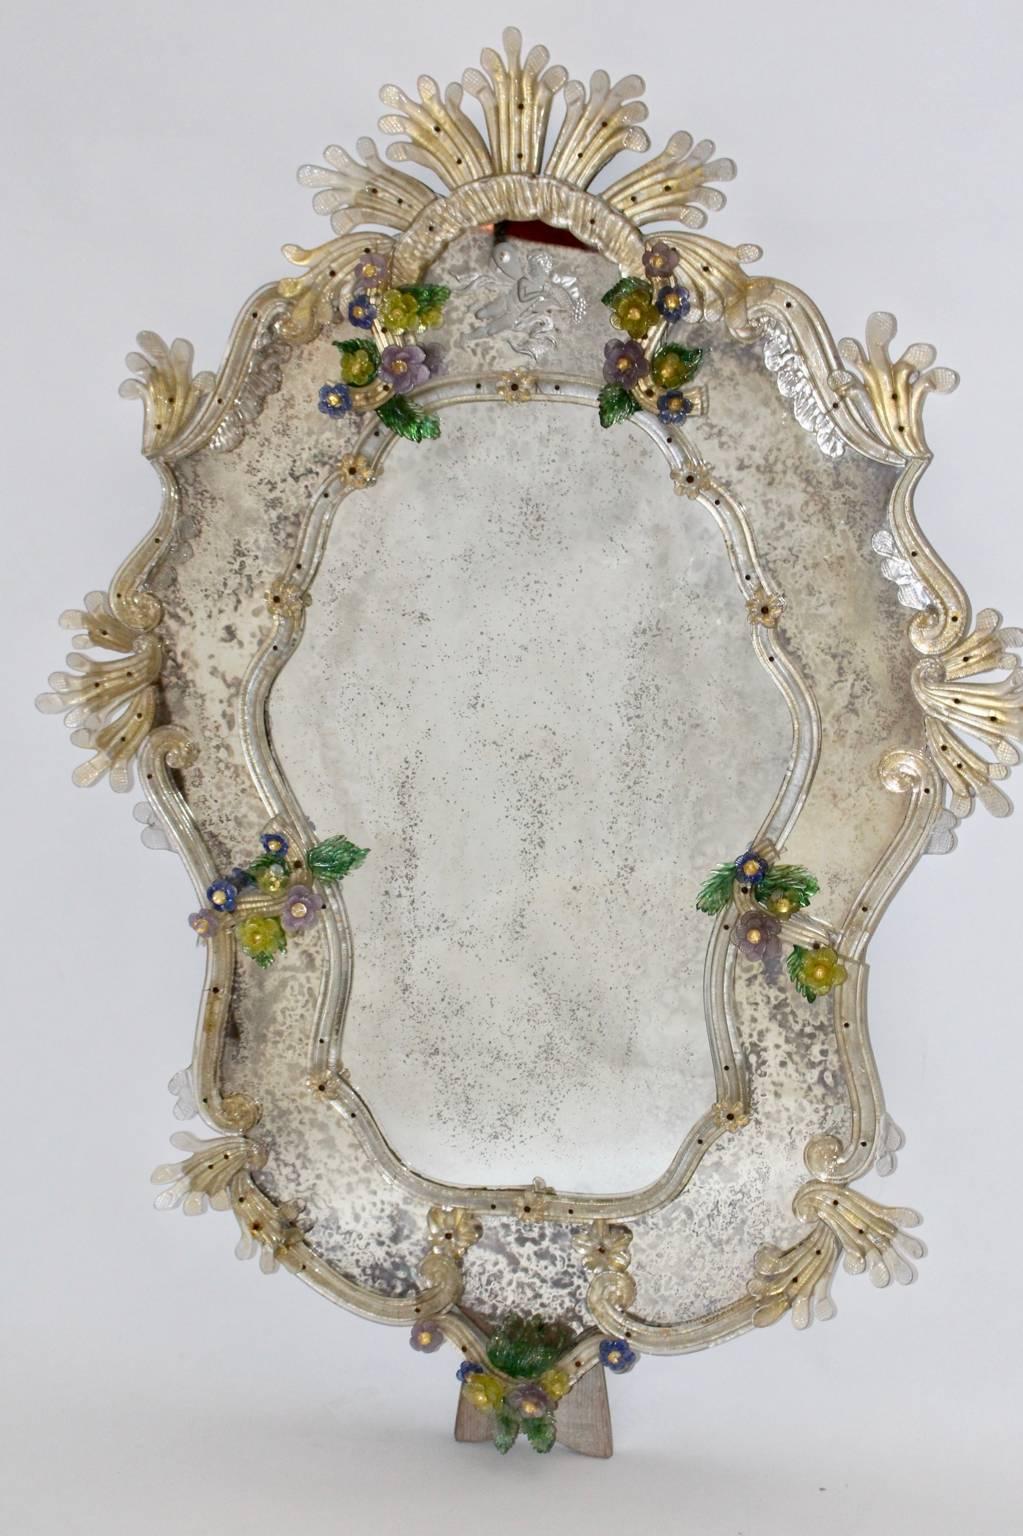 Dieser charmante handgefertigte Wandspiegel wurde in den 1950er Jahren in Venedig entworfen und hergestellt.
Der Rahmen des Spiegels ist mit vielen bunten, handgefertigten Blumen und Elementen aus Murano-Glas verziert.
Im oberen Teil des Spiegels